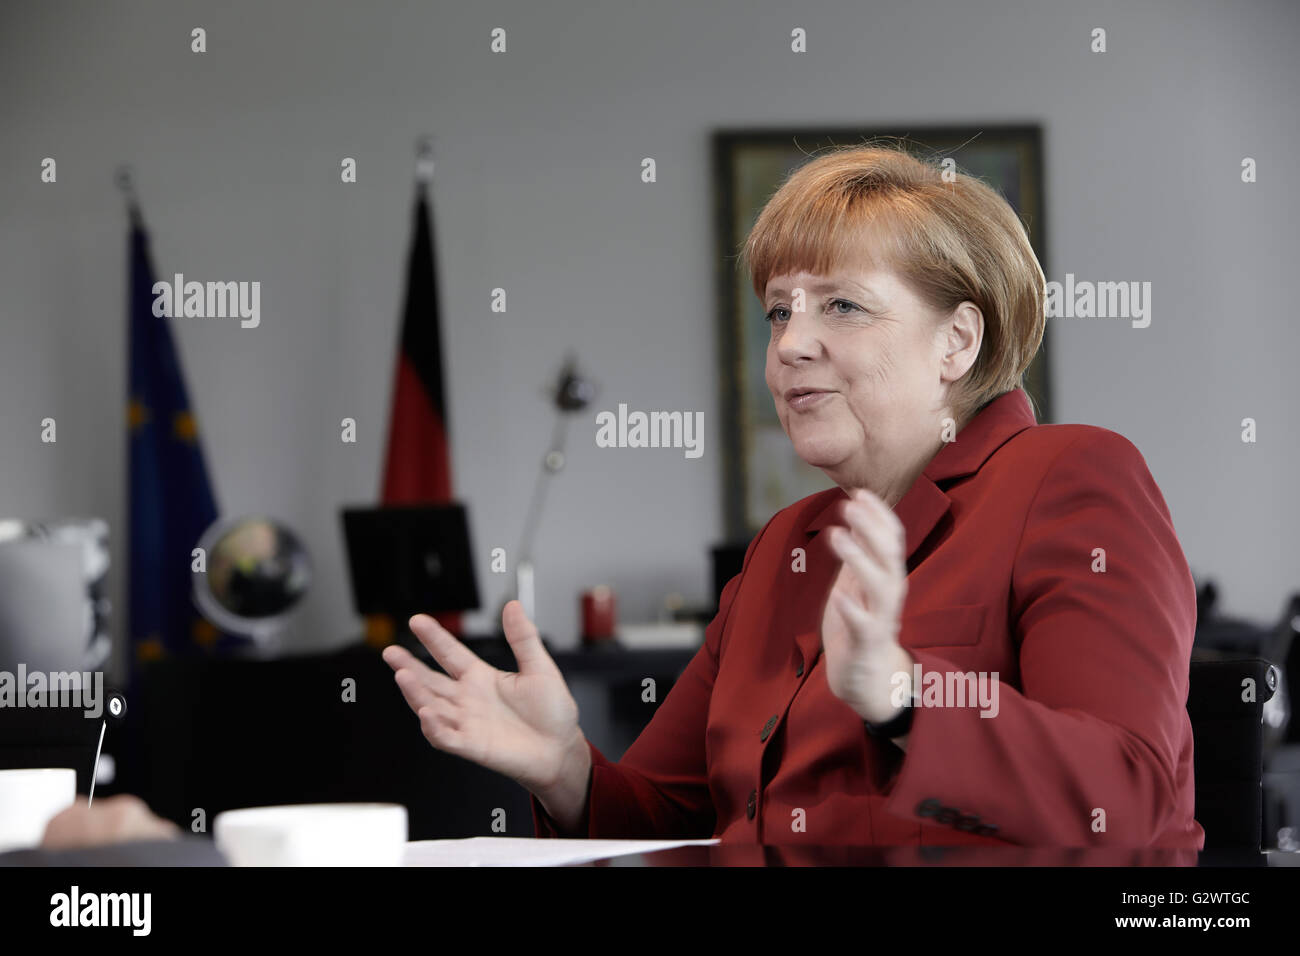 27.05.2013, Berlin, Berlin, Germania - Cancelliere Angela Merkel (CDU) gesti durante un colloquio presso la cancelleria federale a Berlino. 0PA130527D021CAROEX.JPG - non per la vendita in G E R M A N Y, A U S T R I A, S W I T Z e R L A N D [modello di rilascio: NO, la proprietà di rilascio: NO, (c) caro agenzia fotografica / Ponizak, http://www.caro-images.com, info@carofoto.pl - Qualsiasi uso di questa immagine è soggetto a royalty!] Foto Stock